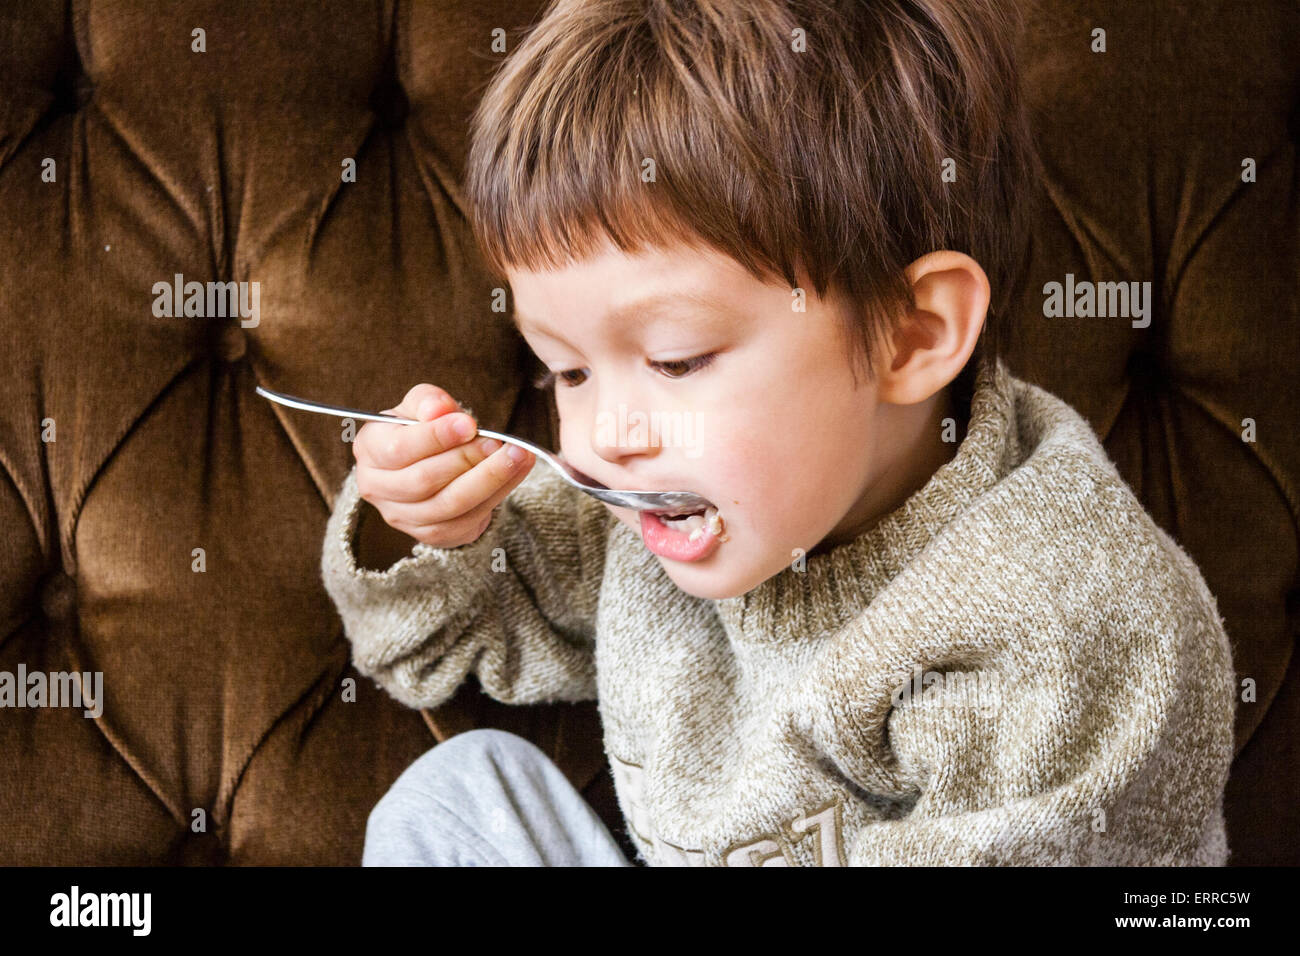 Interno, primo piano di un bambino caucasico, ragazzo, di 3-4 anni, con un grosso ponticello e seduto sul divano marrone mentre si mangia cereali con un cucchiaio d'argento. Foto Stock